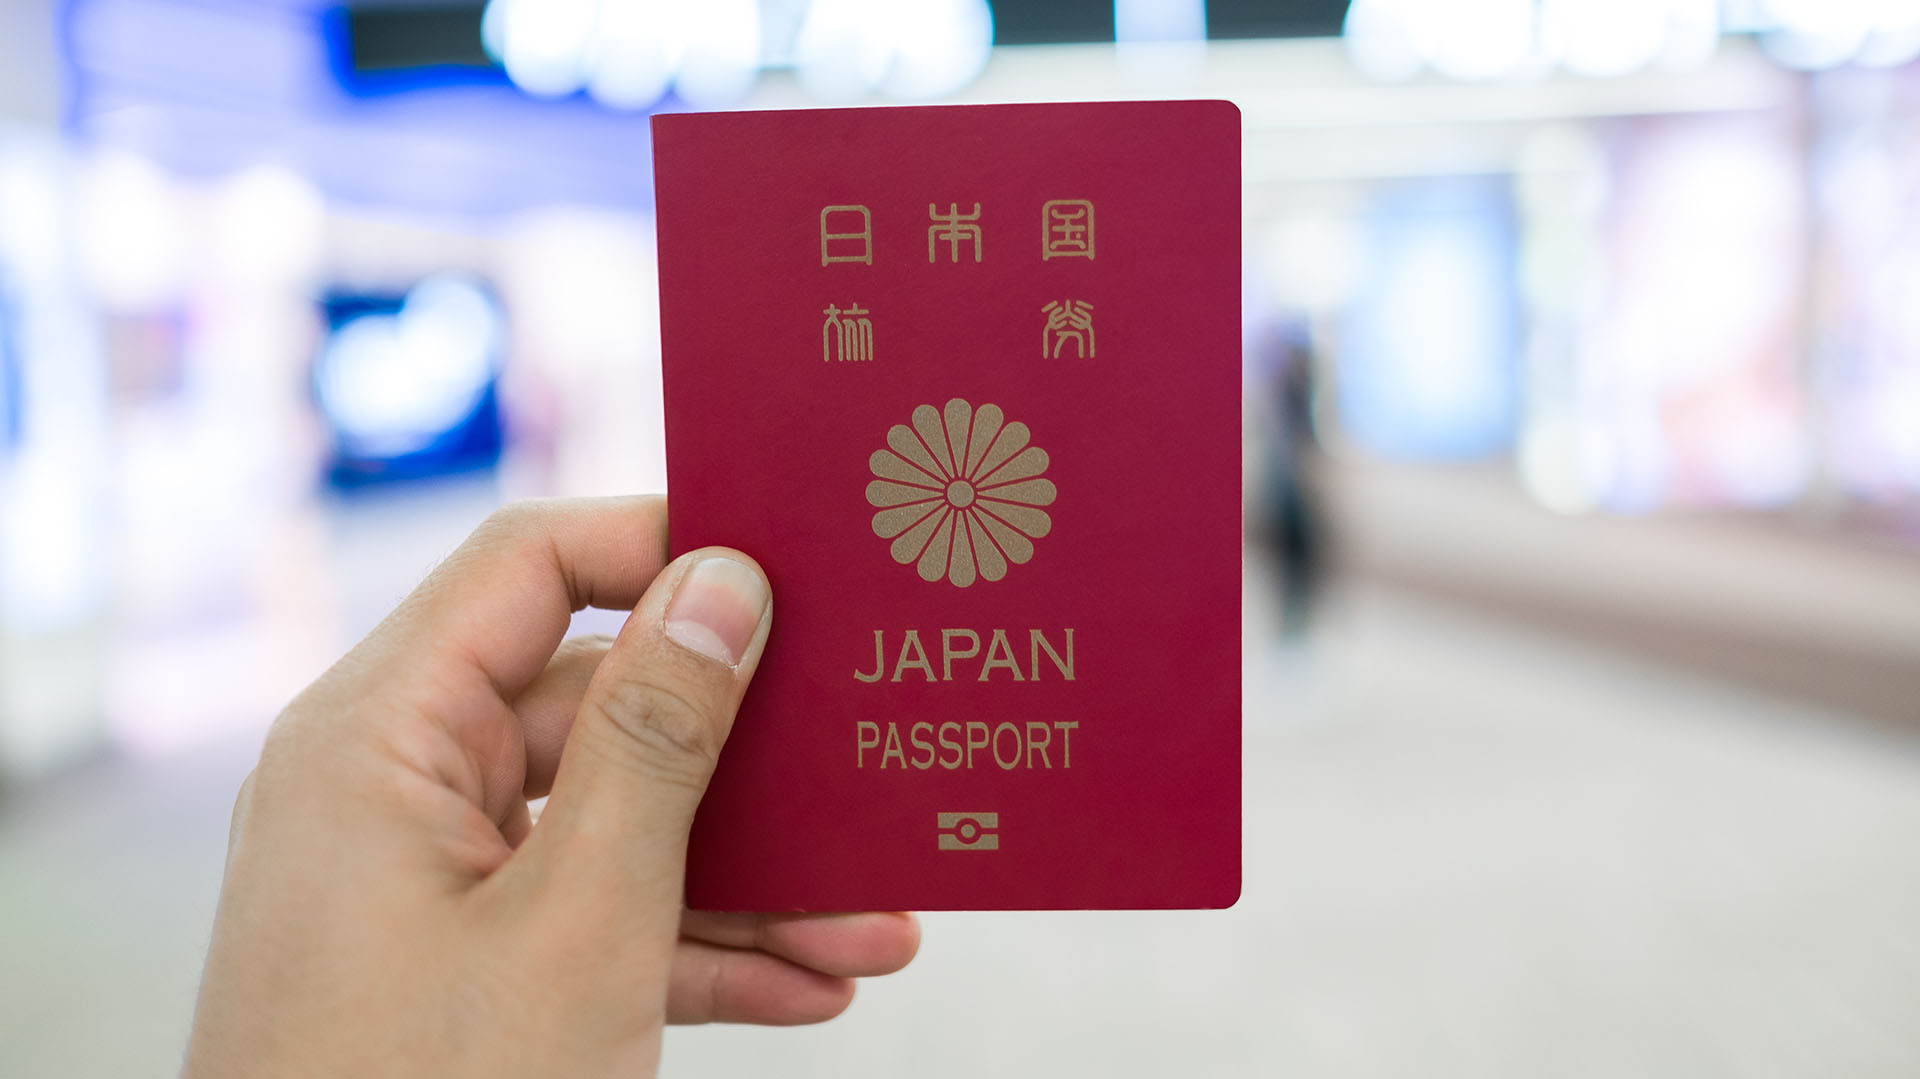 Pasaporte japonés, el más poderoso de la actualidad, sin tomar en cuenta las restricciones de viajes (Shutterstock)